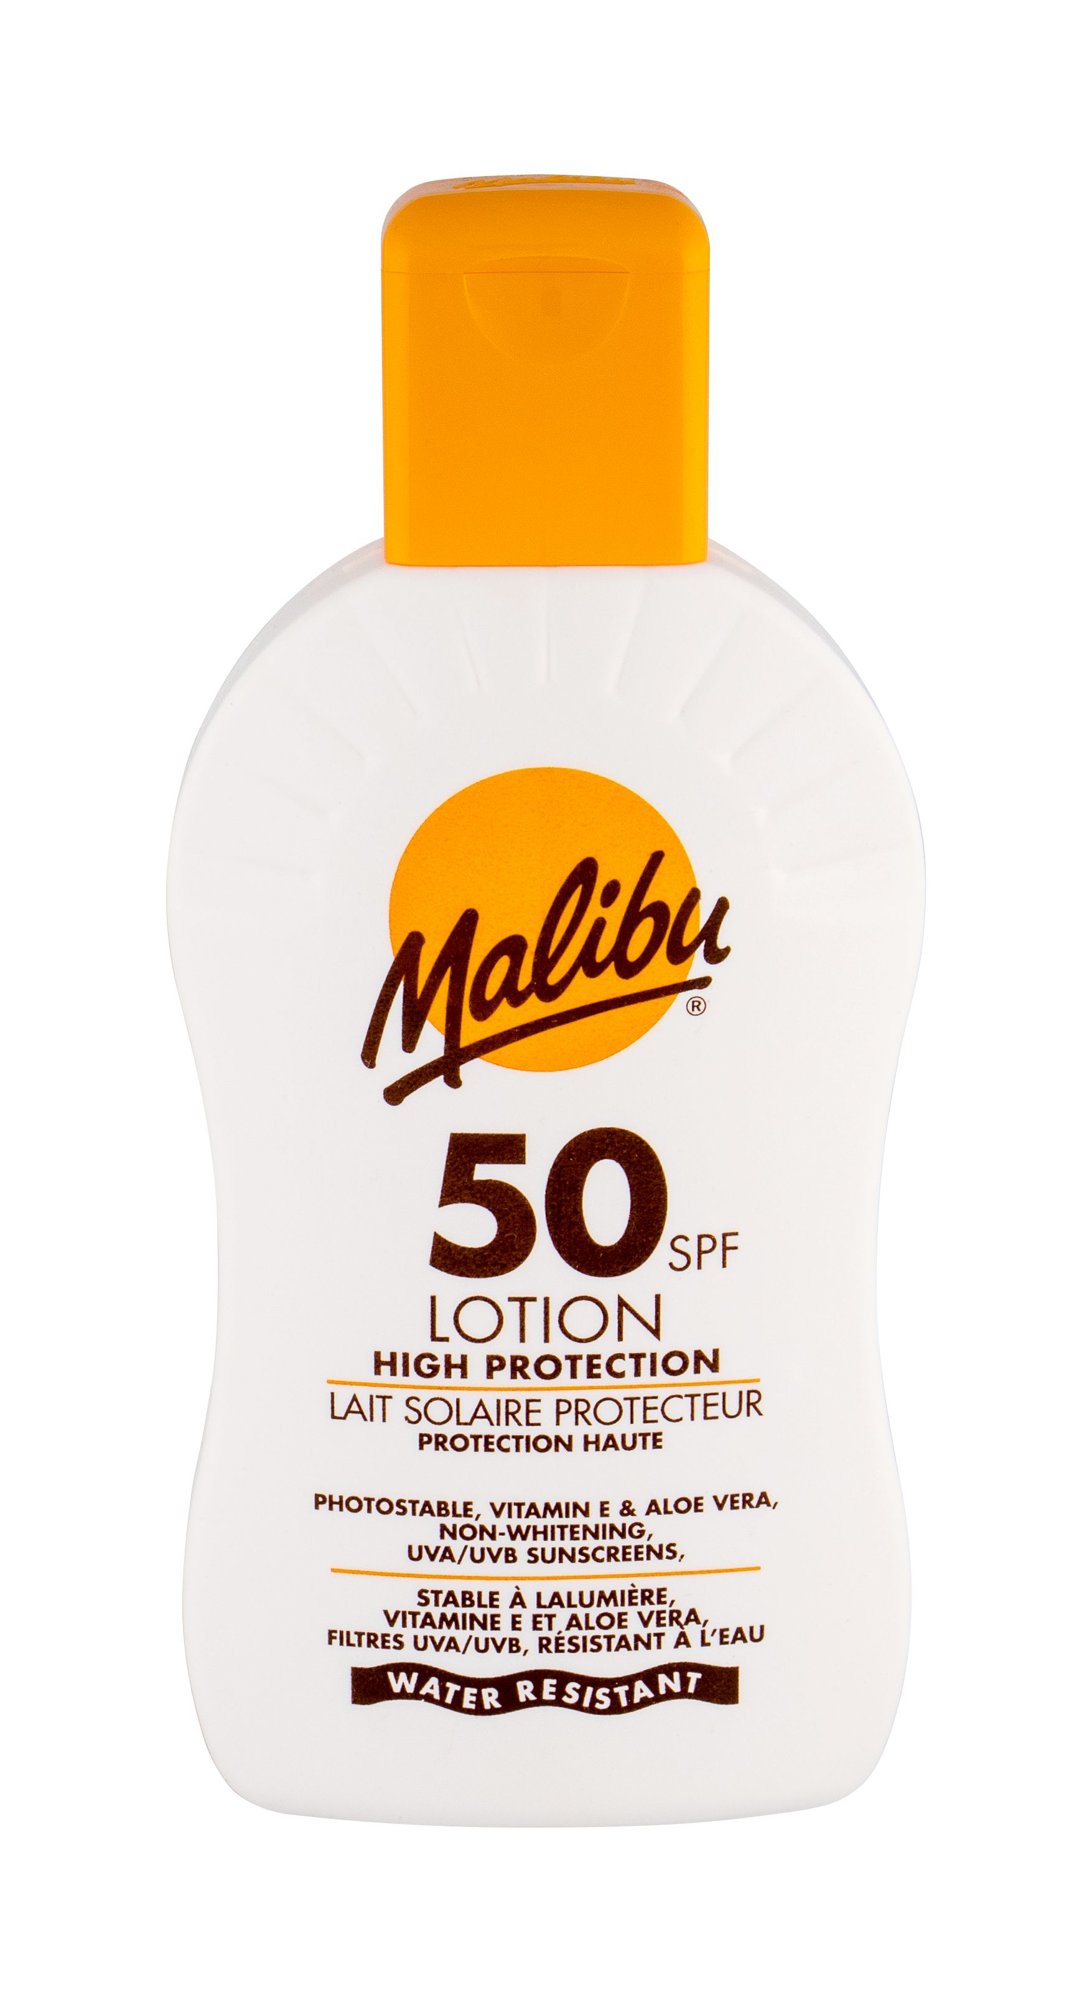 Malibu Lotion SPF 50 įdegio losjonas